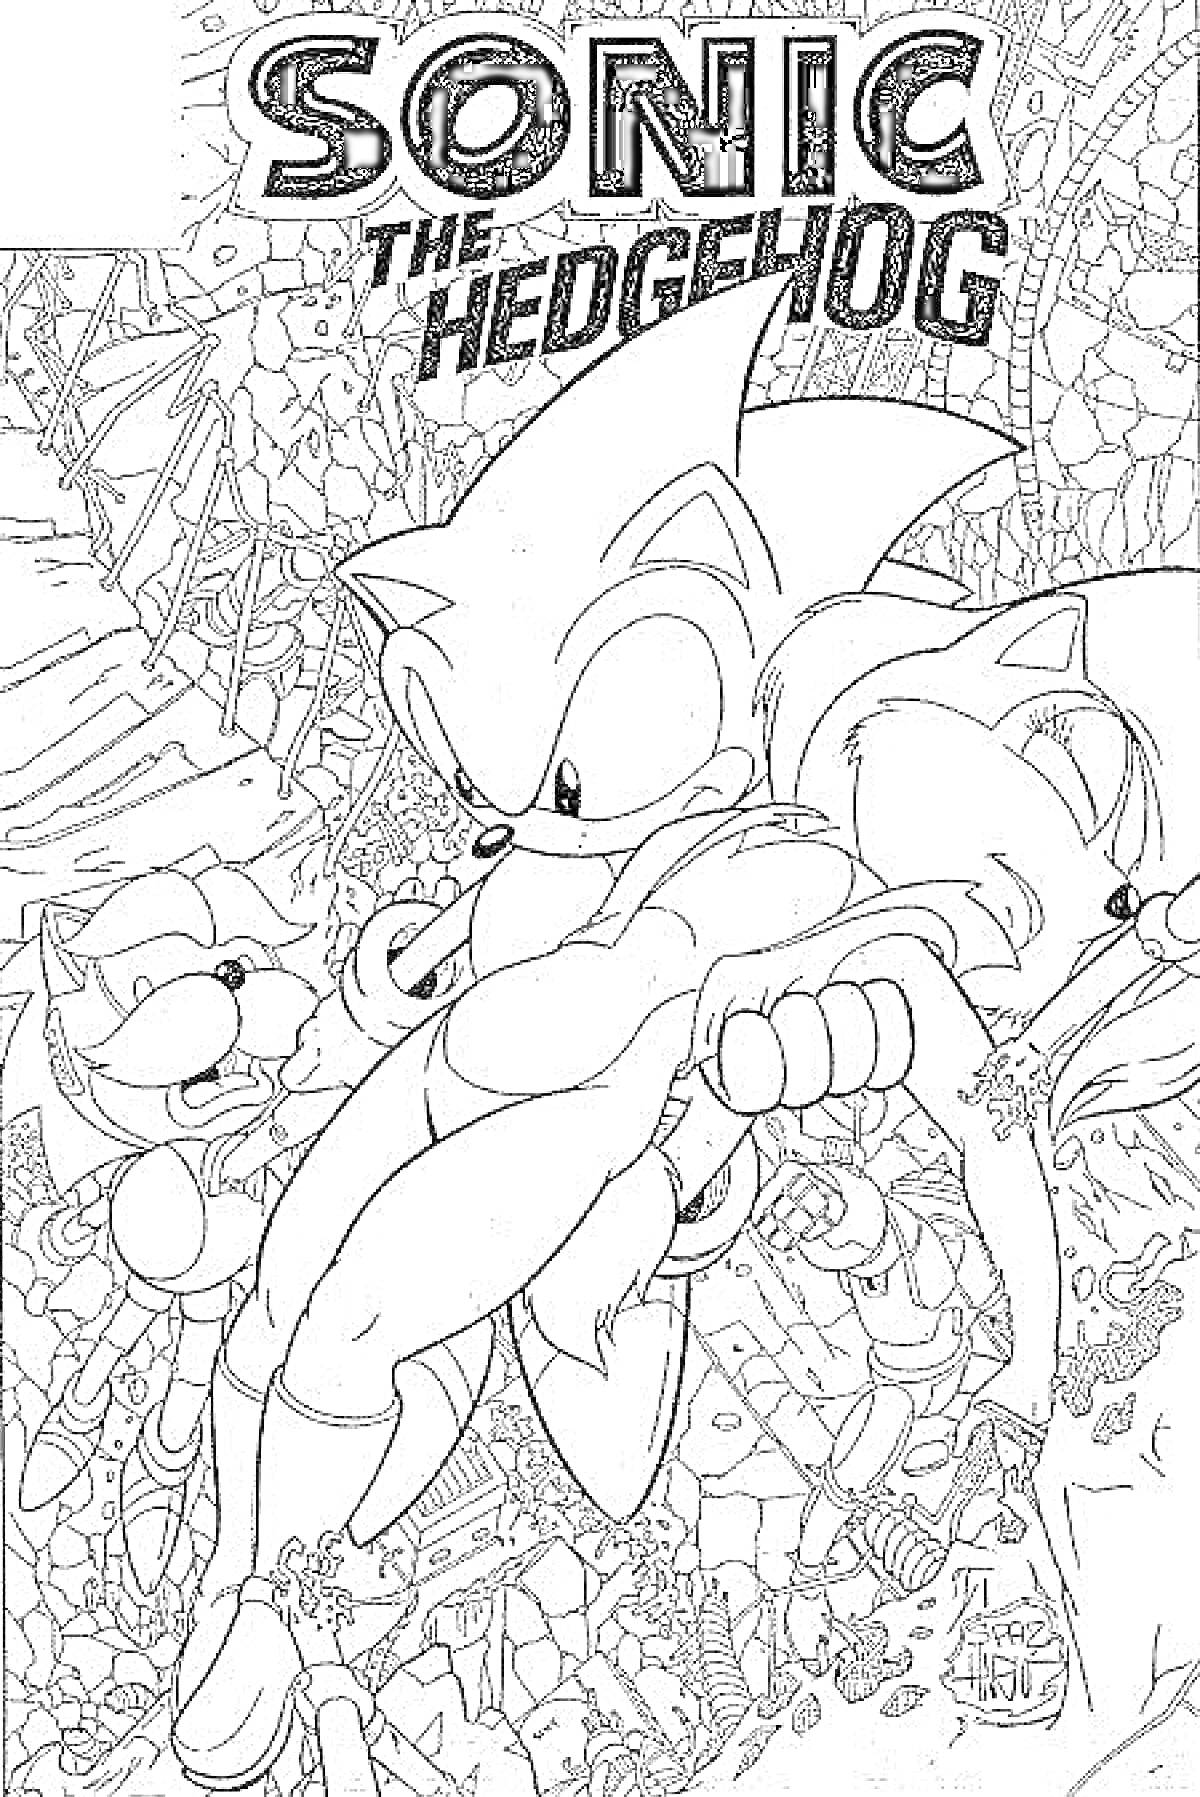 Sonic the Hedgehog с двумя персонажами на развалинах